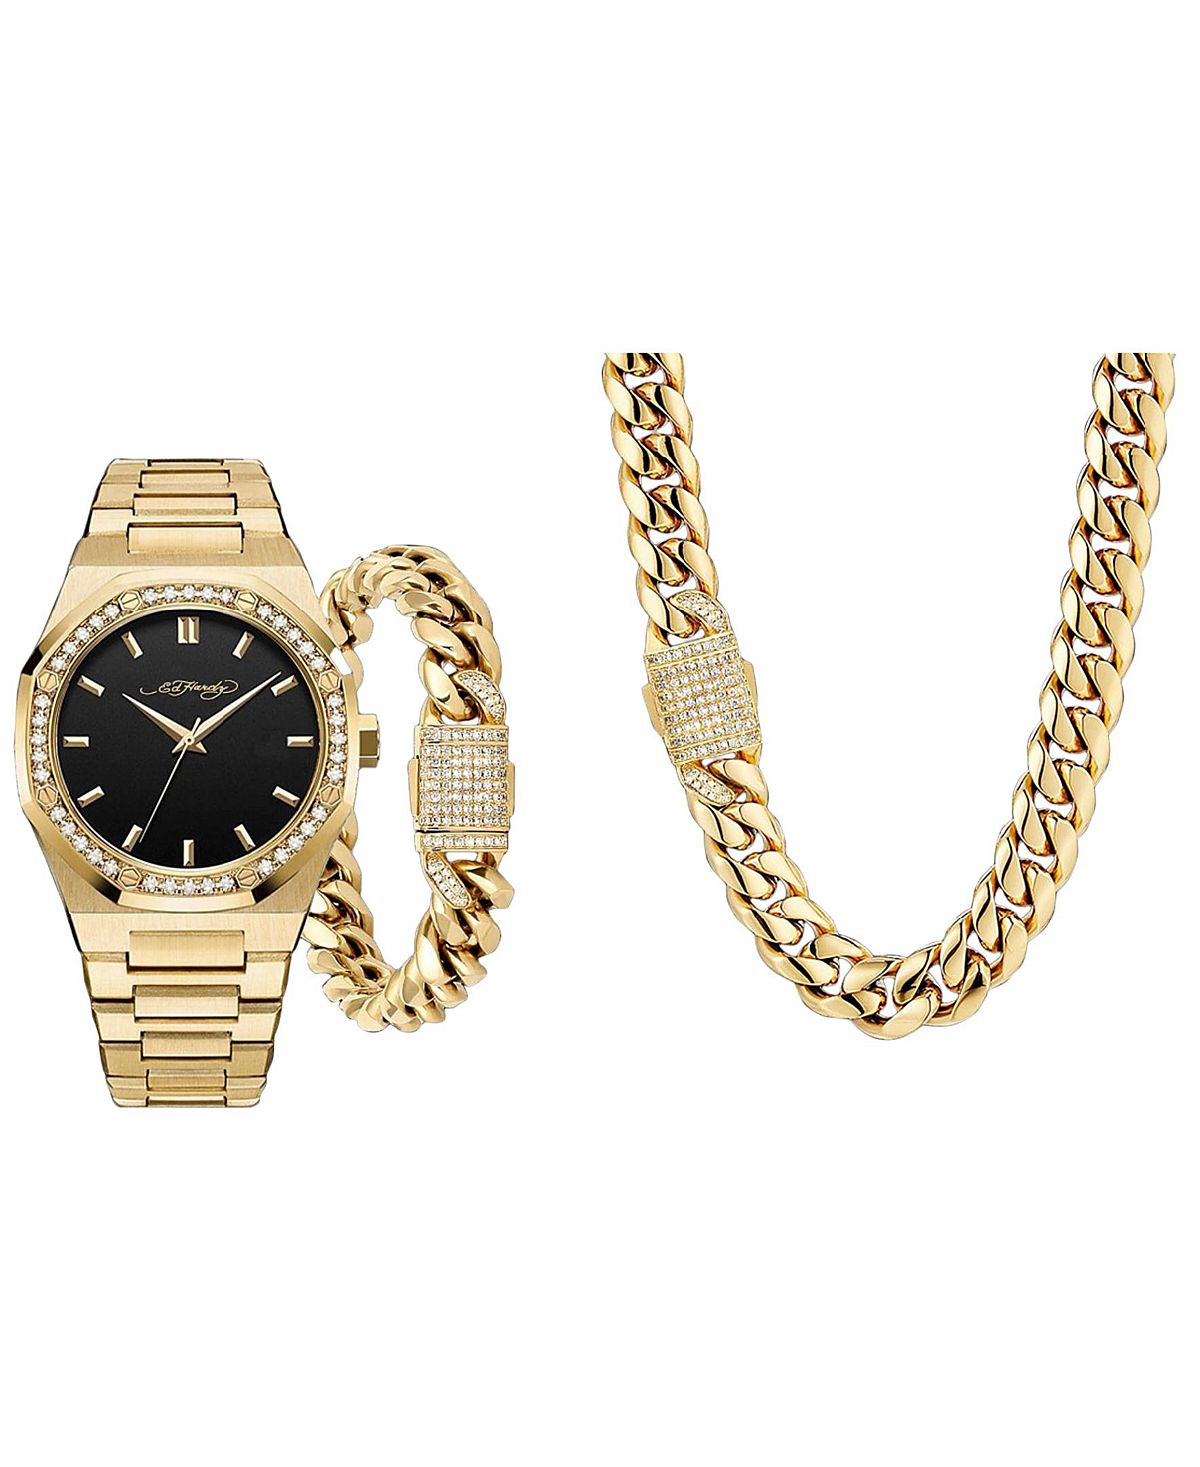 Мужские часы-браслет из блестящего золотистого металла, 42 мм, подарочный набор Ed Hardy кроссовки ed hardy ghost black gold